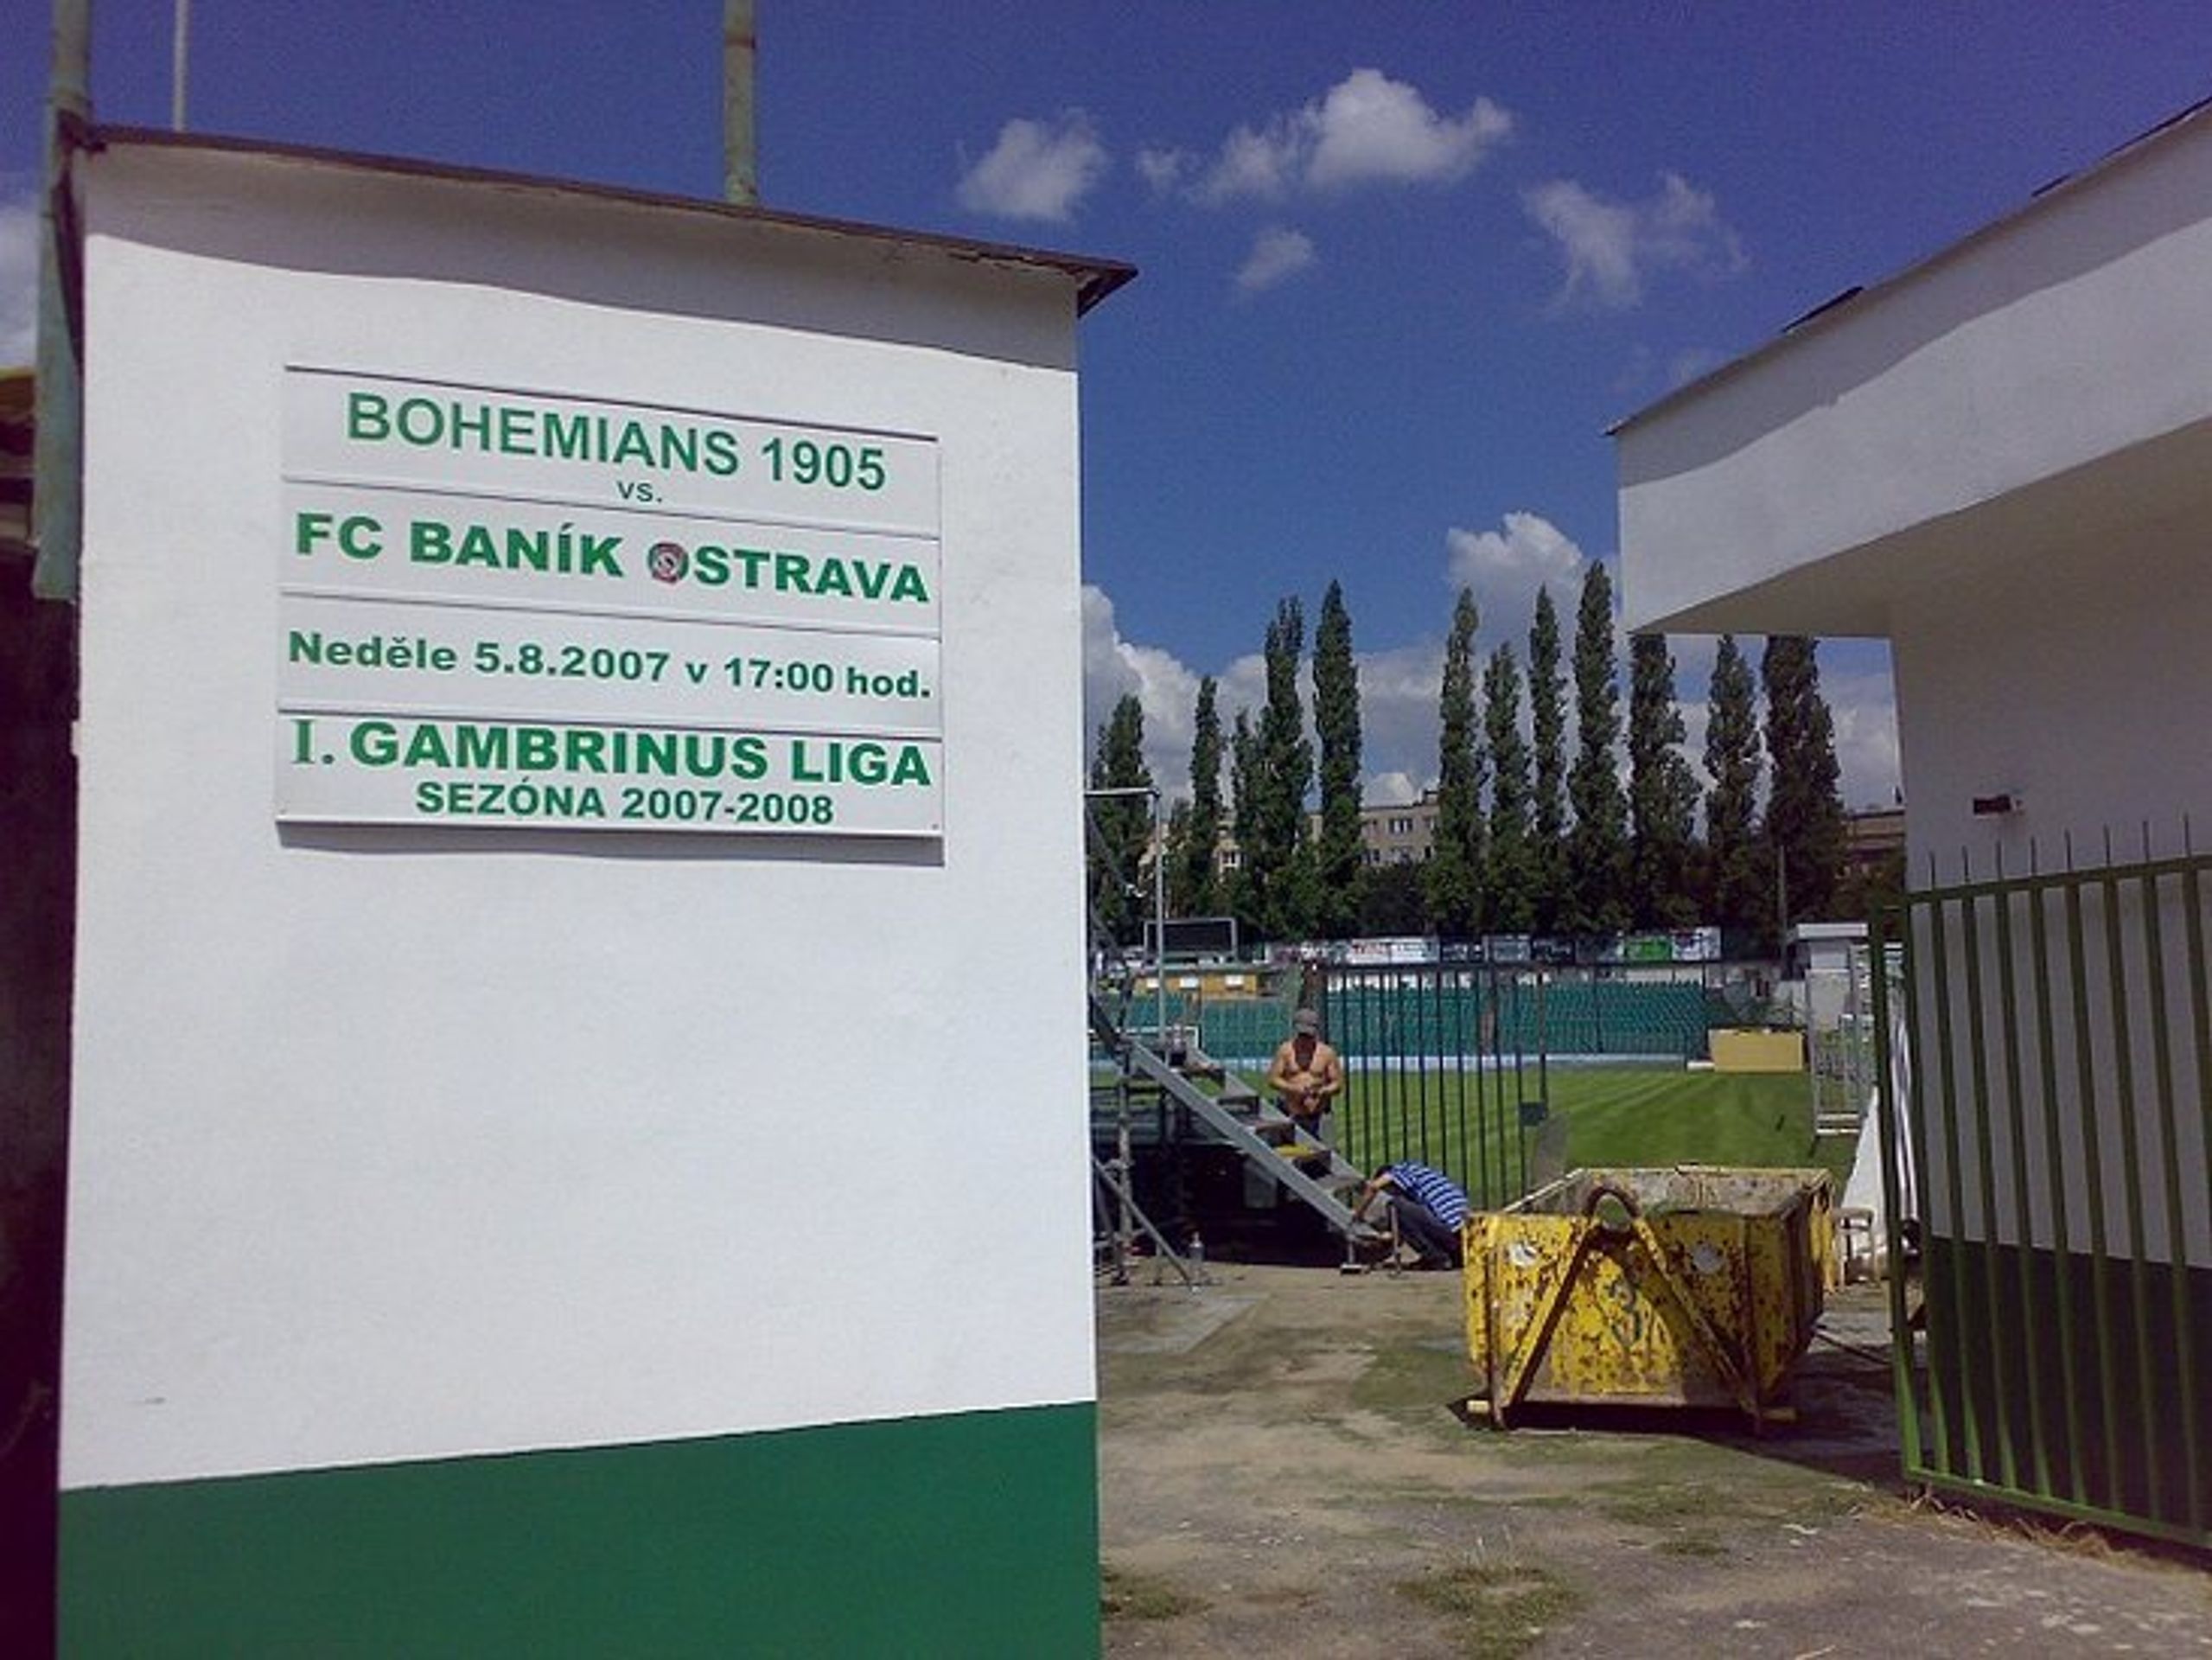 Stadion Bohemians Praha 1905 už hlásí první ligové utkání, v jeho útrobách se ale stále pracuje na konečné podobě pro ligu. - Bohemians mají za cíl jen záchranu (1/2)